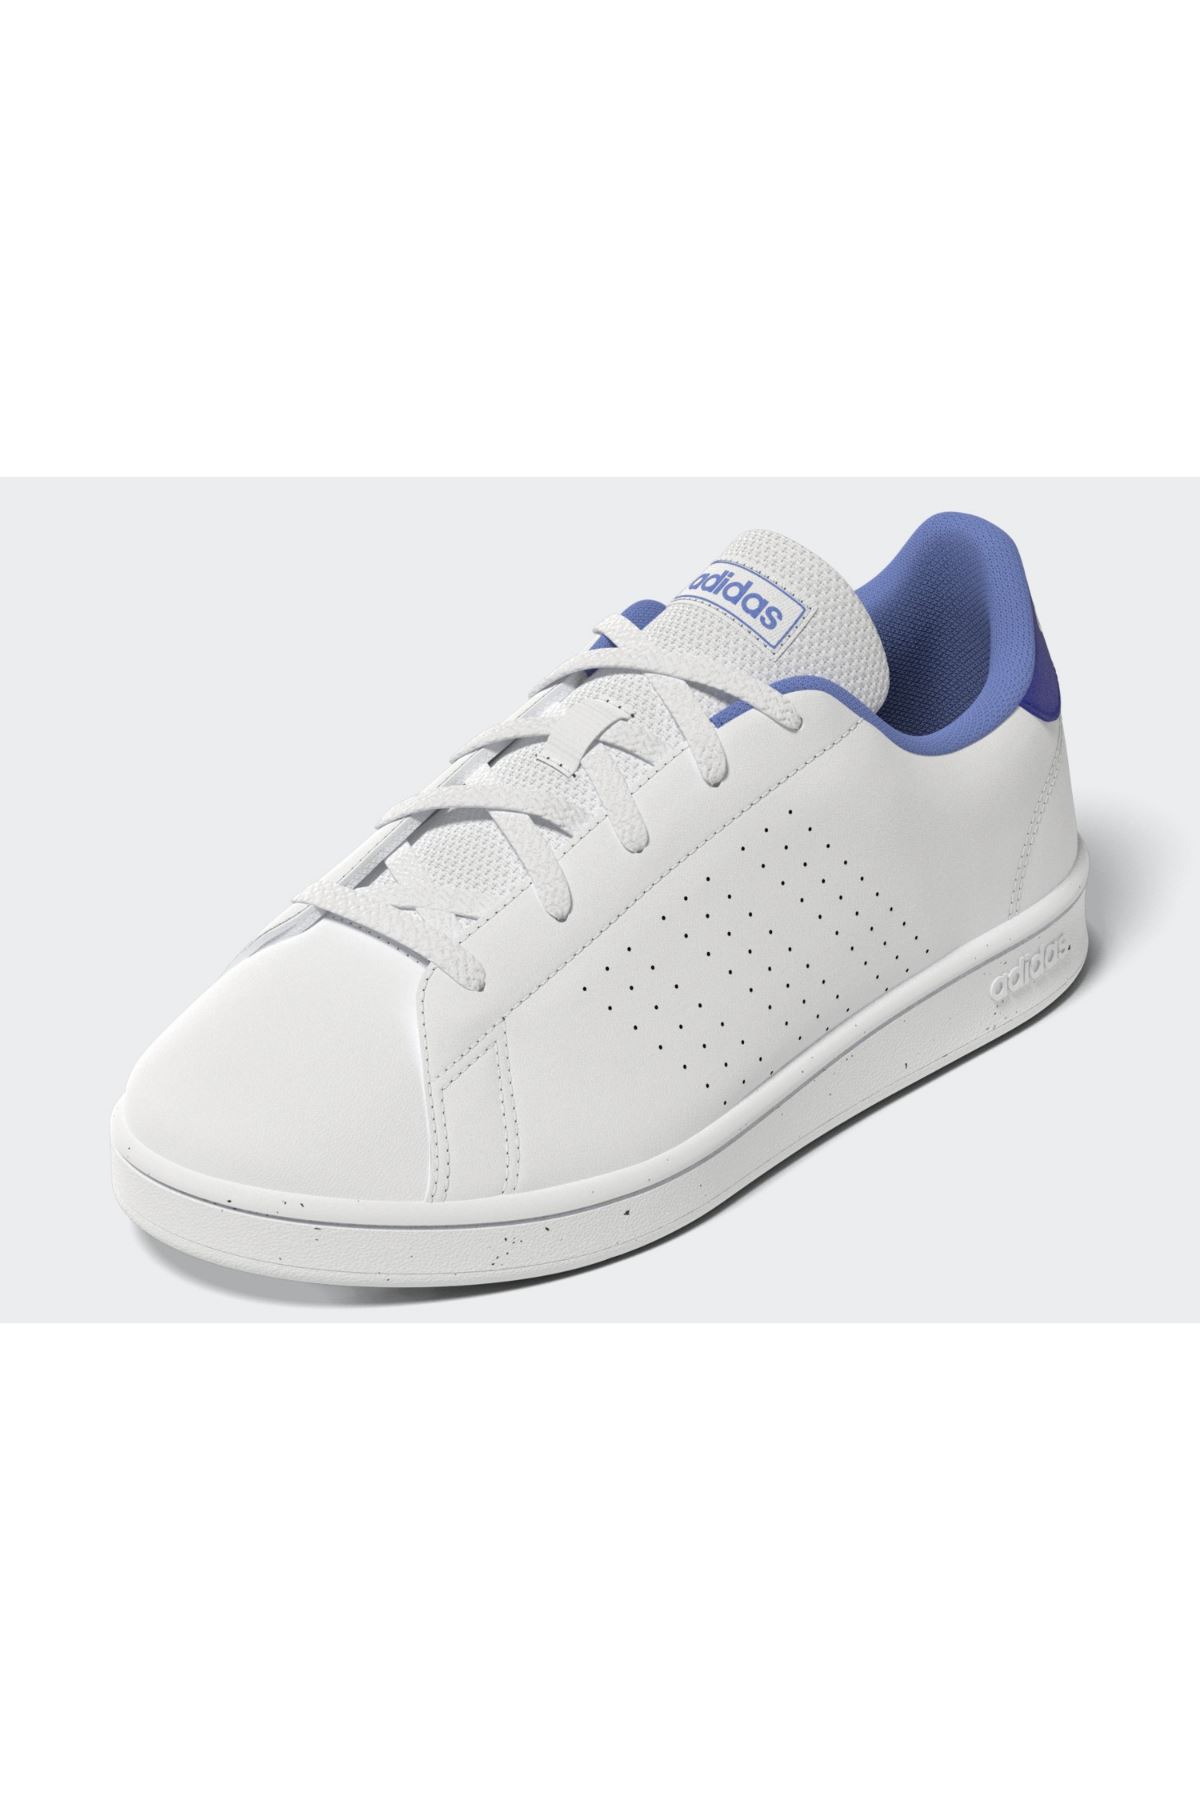 Adidas Advantage K Kadın Beyaz Spor Ayakkabı - H06160